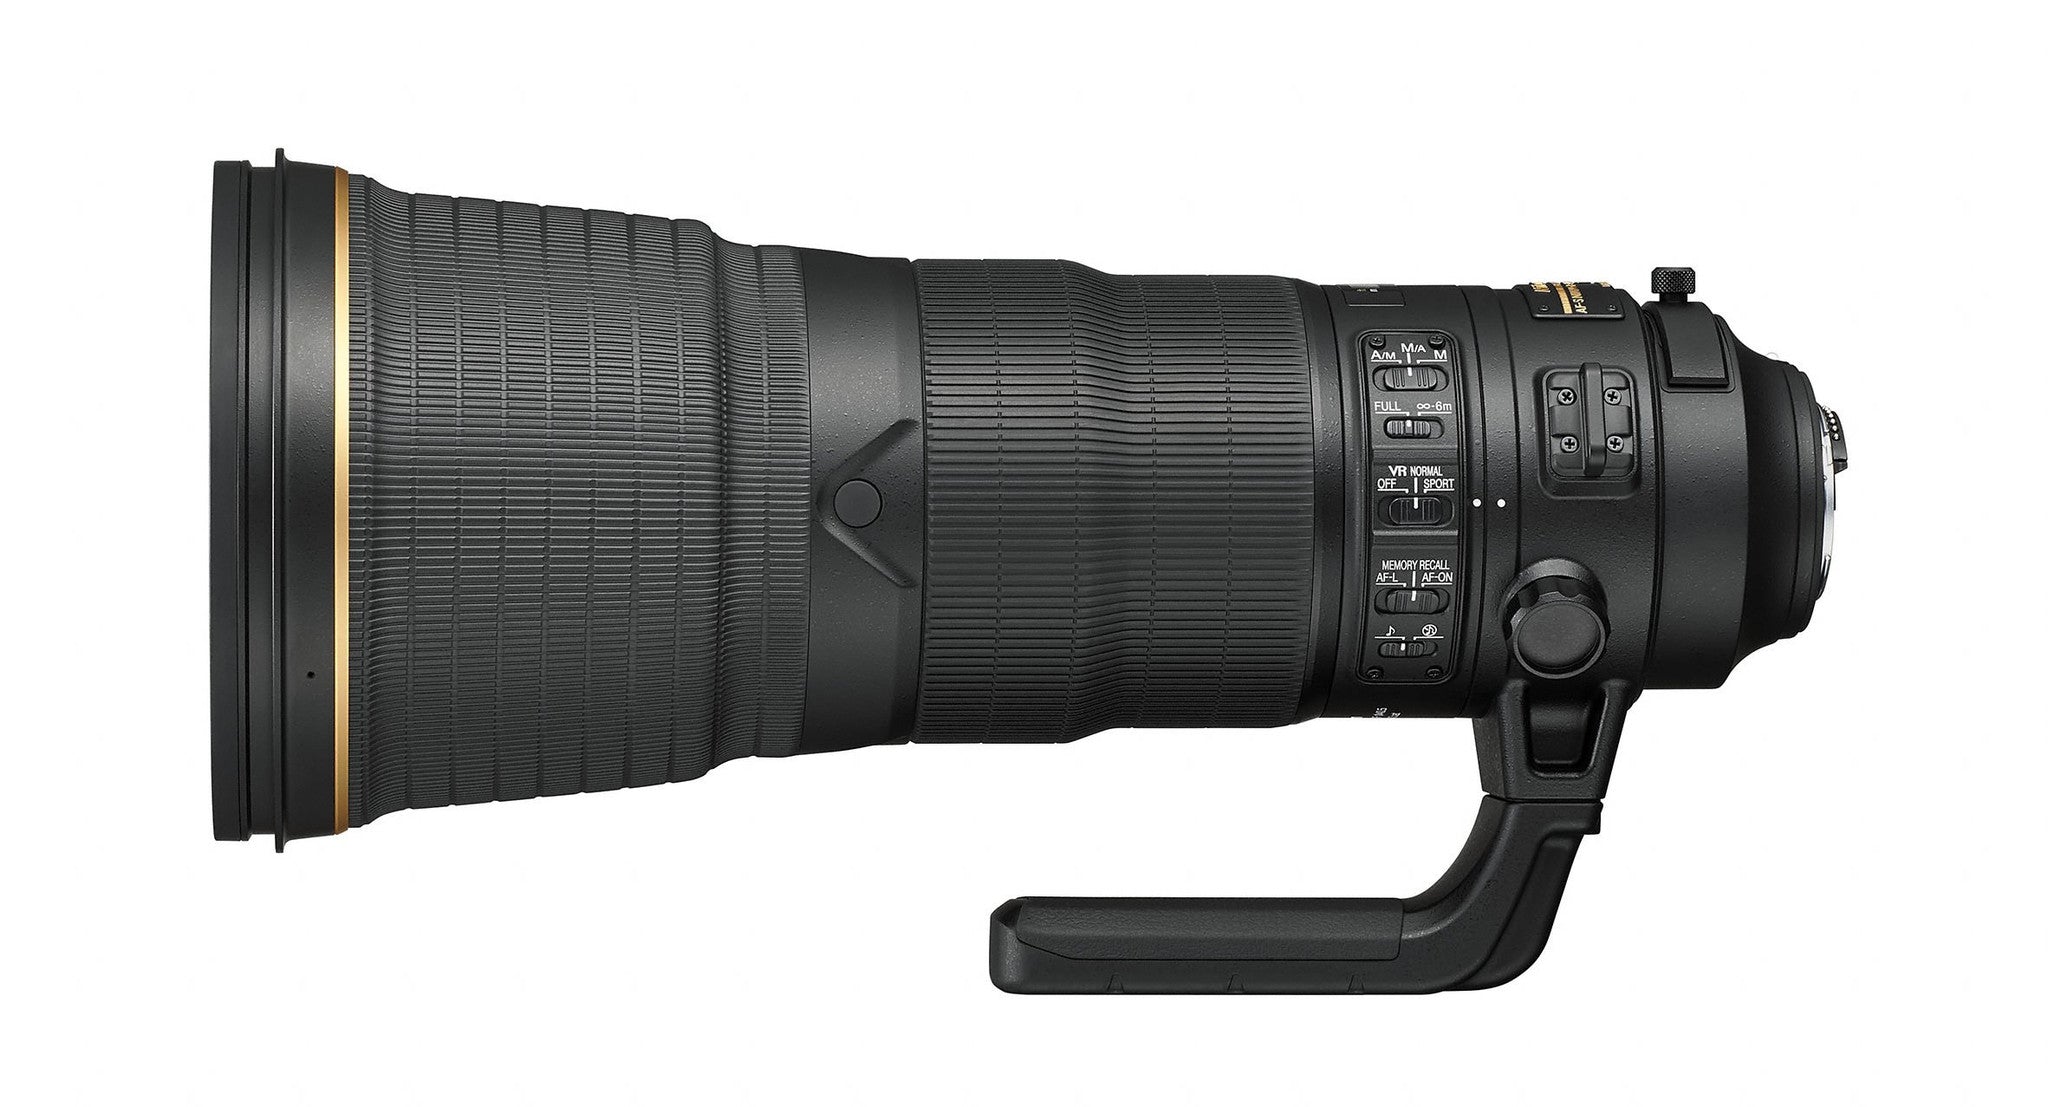 Nikon 400mm f/2.8 FL ED VR AF-S Lens, lenses slr lenses, Nikon - Pictureline  - 2